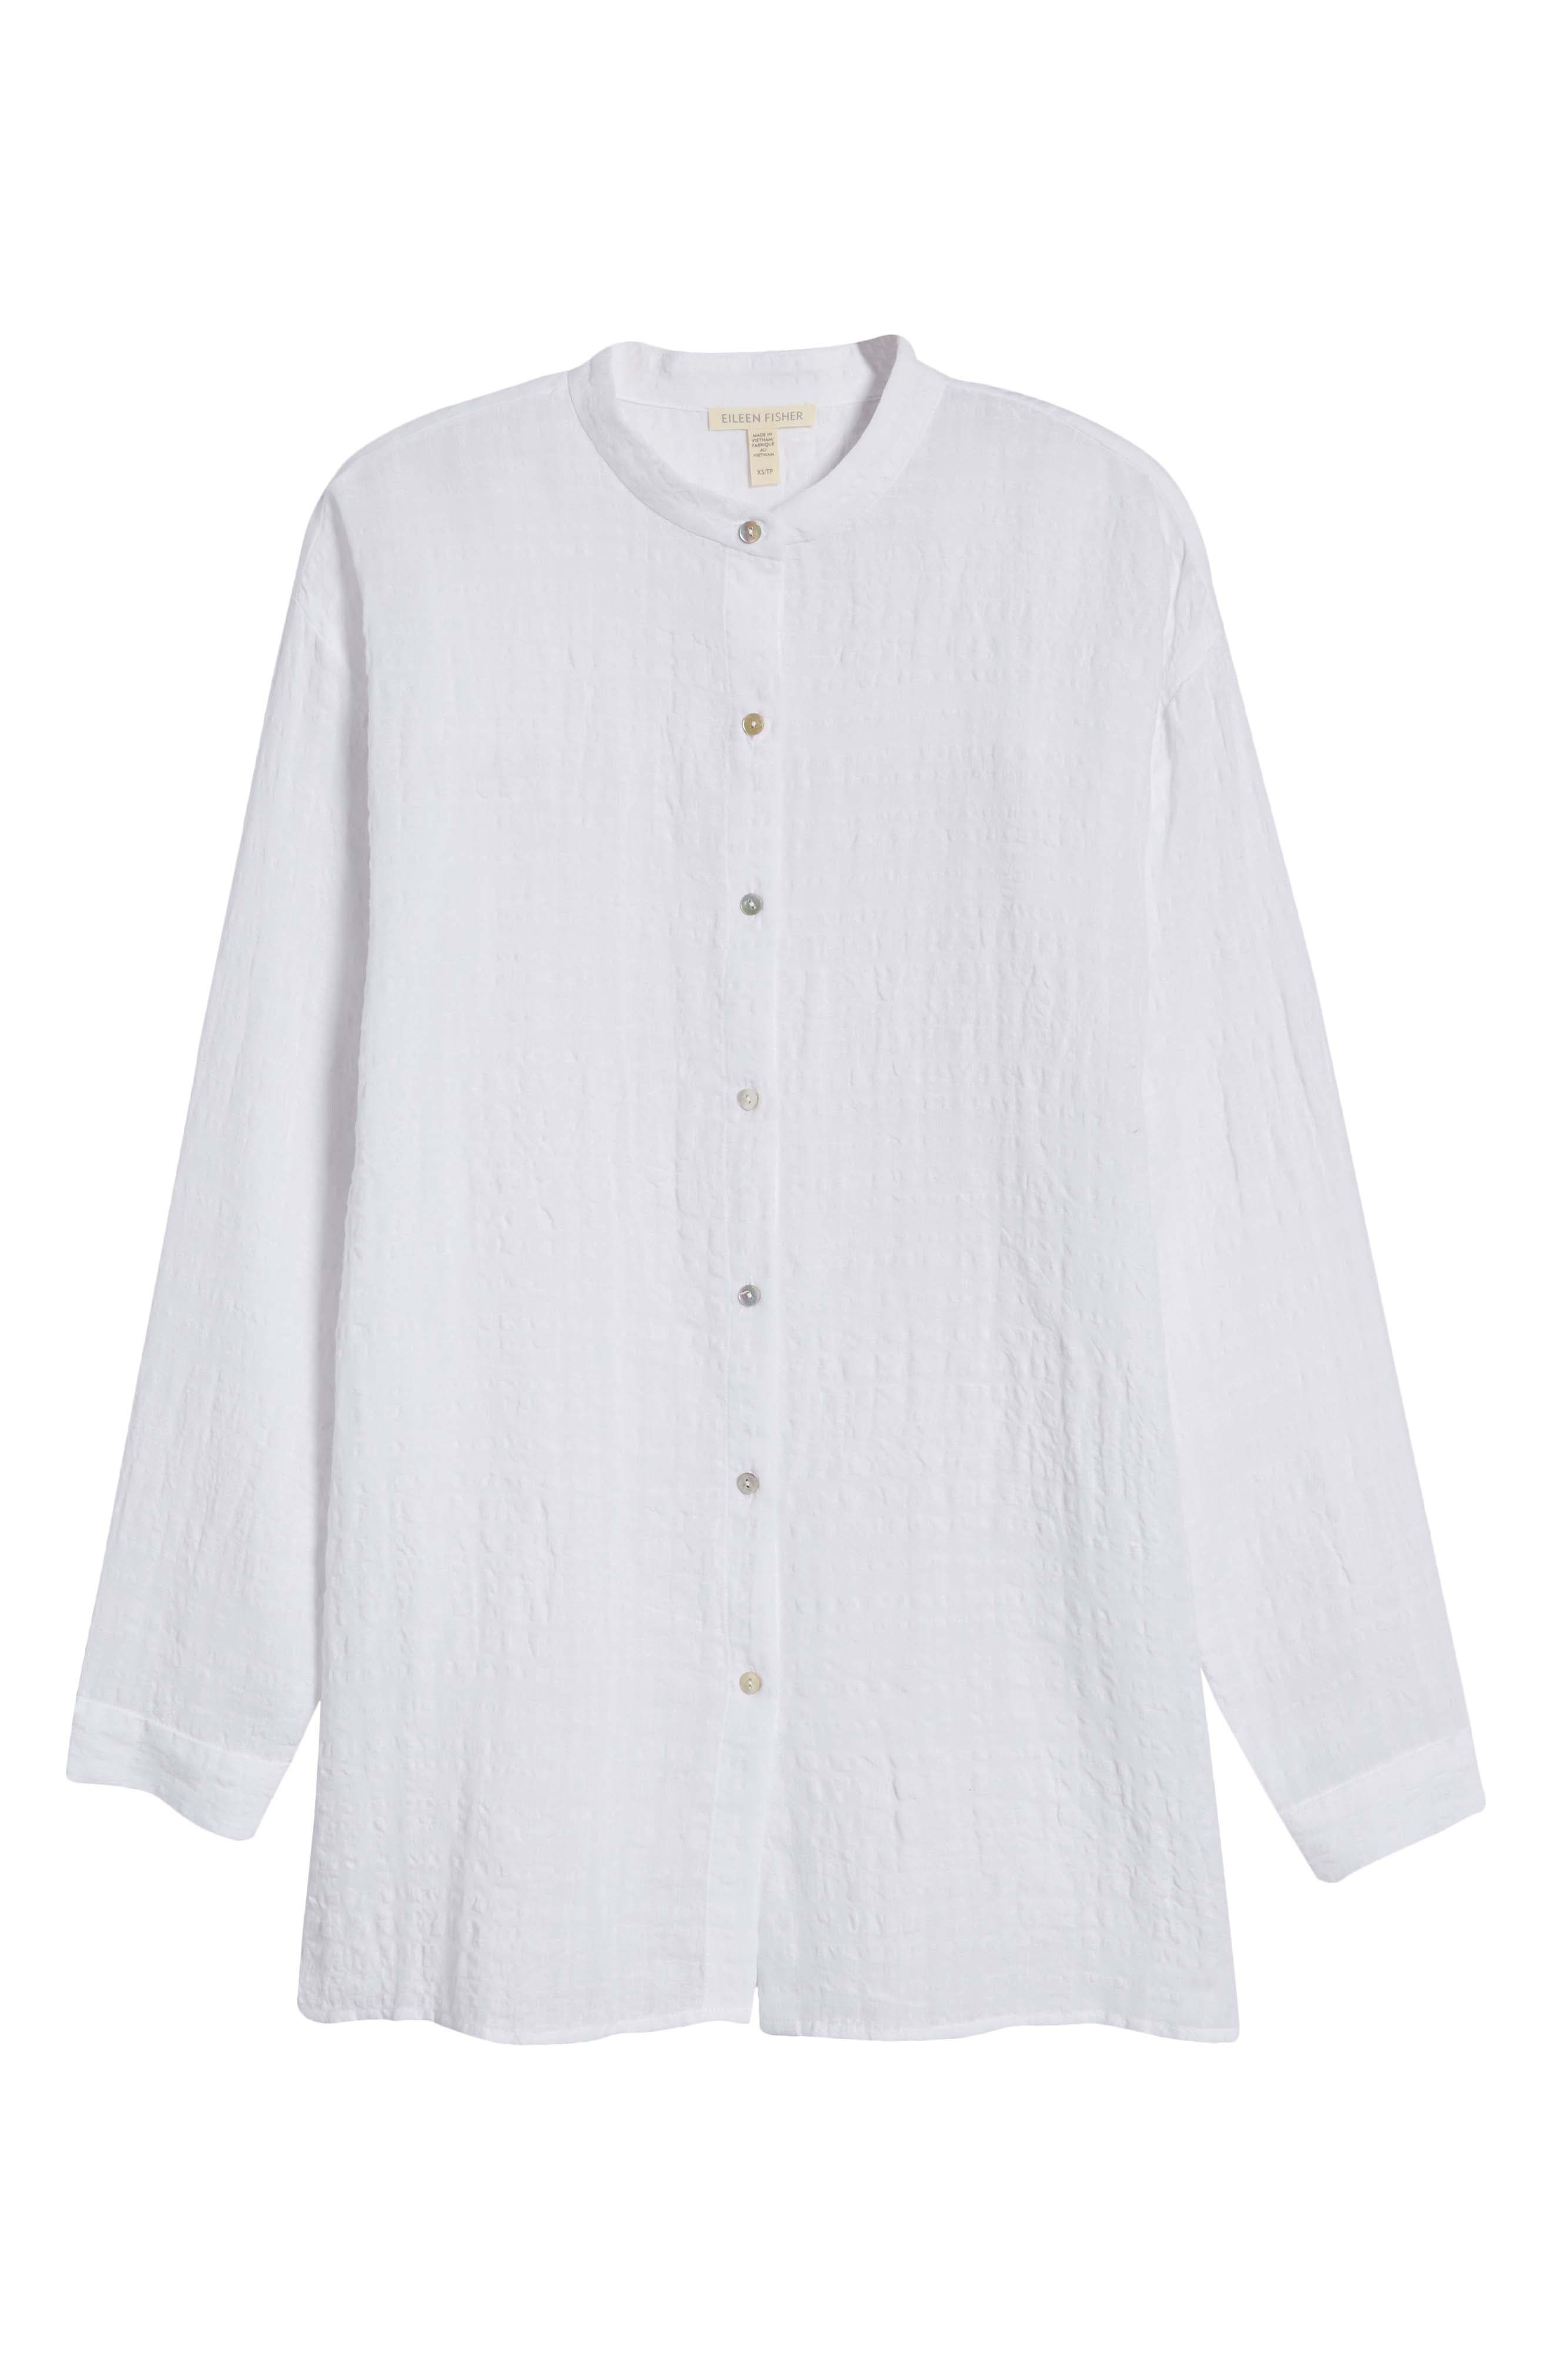 品多く 送料無料 アイリーンフィッシャー Eileen Fisher レディース 女性用 ファッション ボタンシャツ Classic Collar  Shirt White